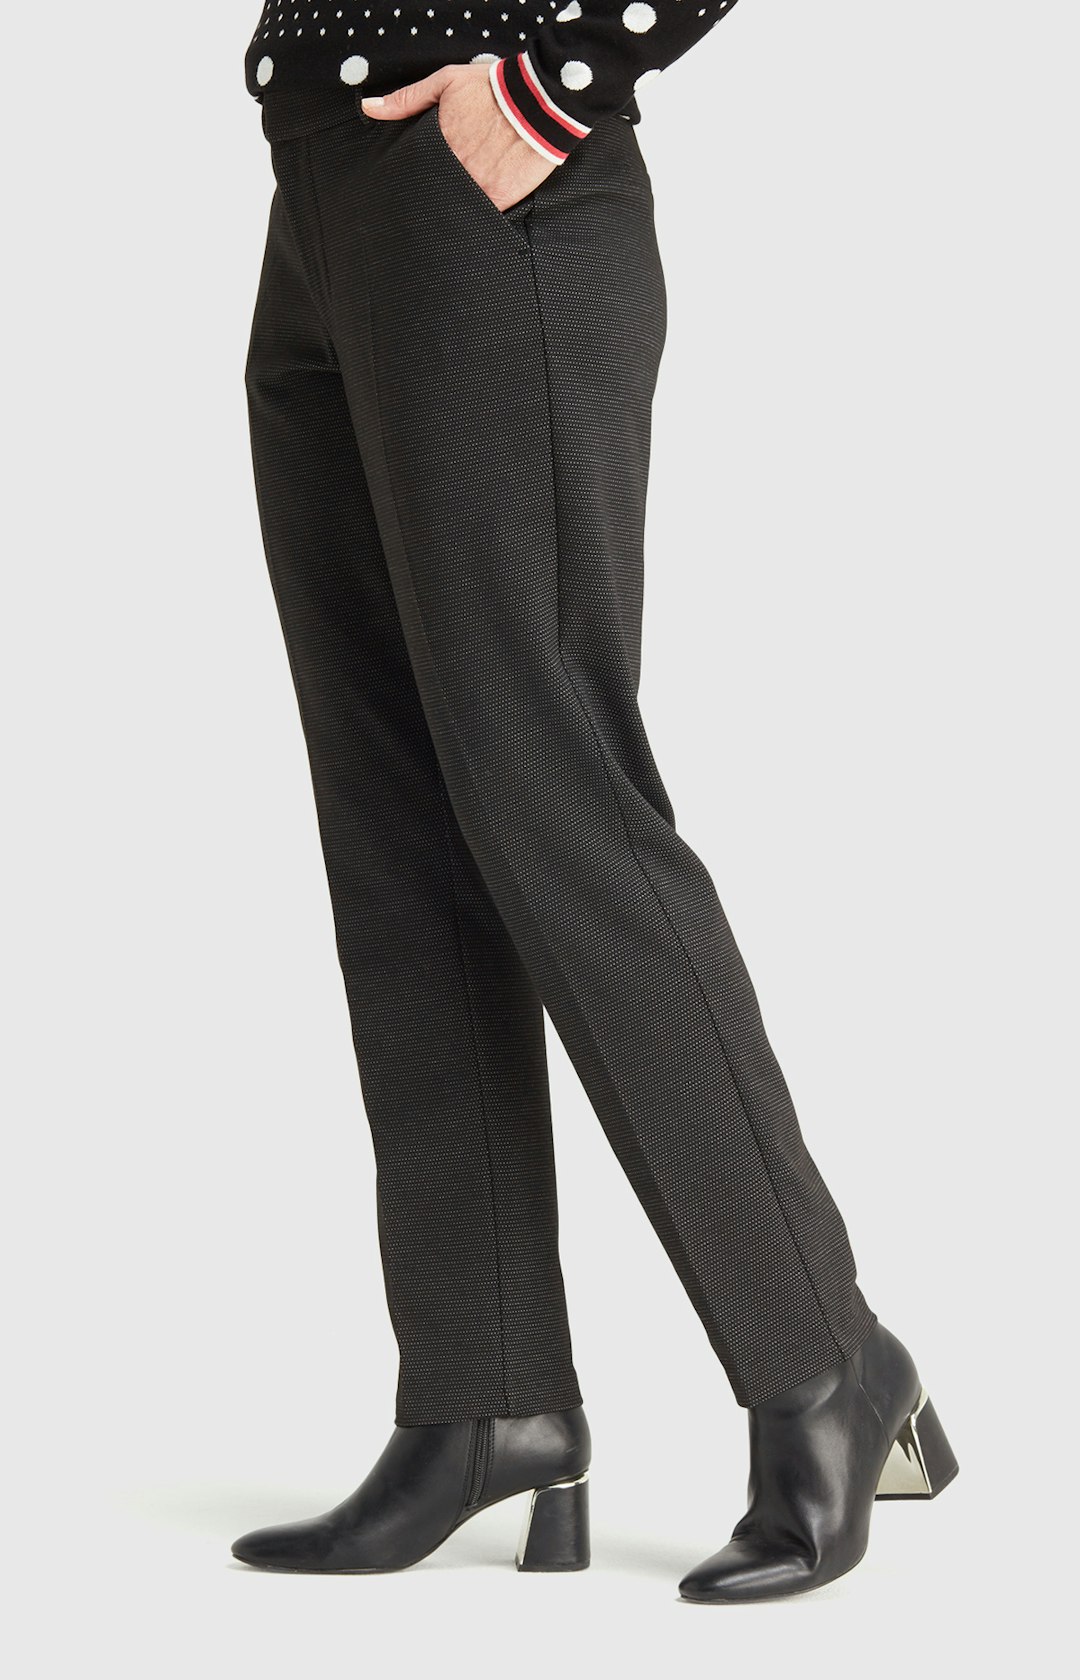 Hose mit Allover-Muster in Schwarz-Weiß